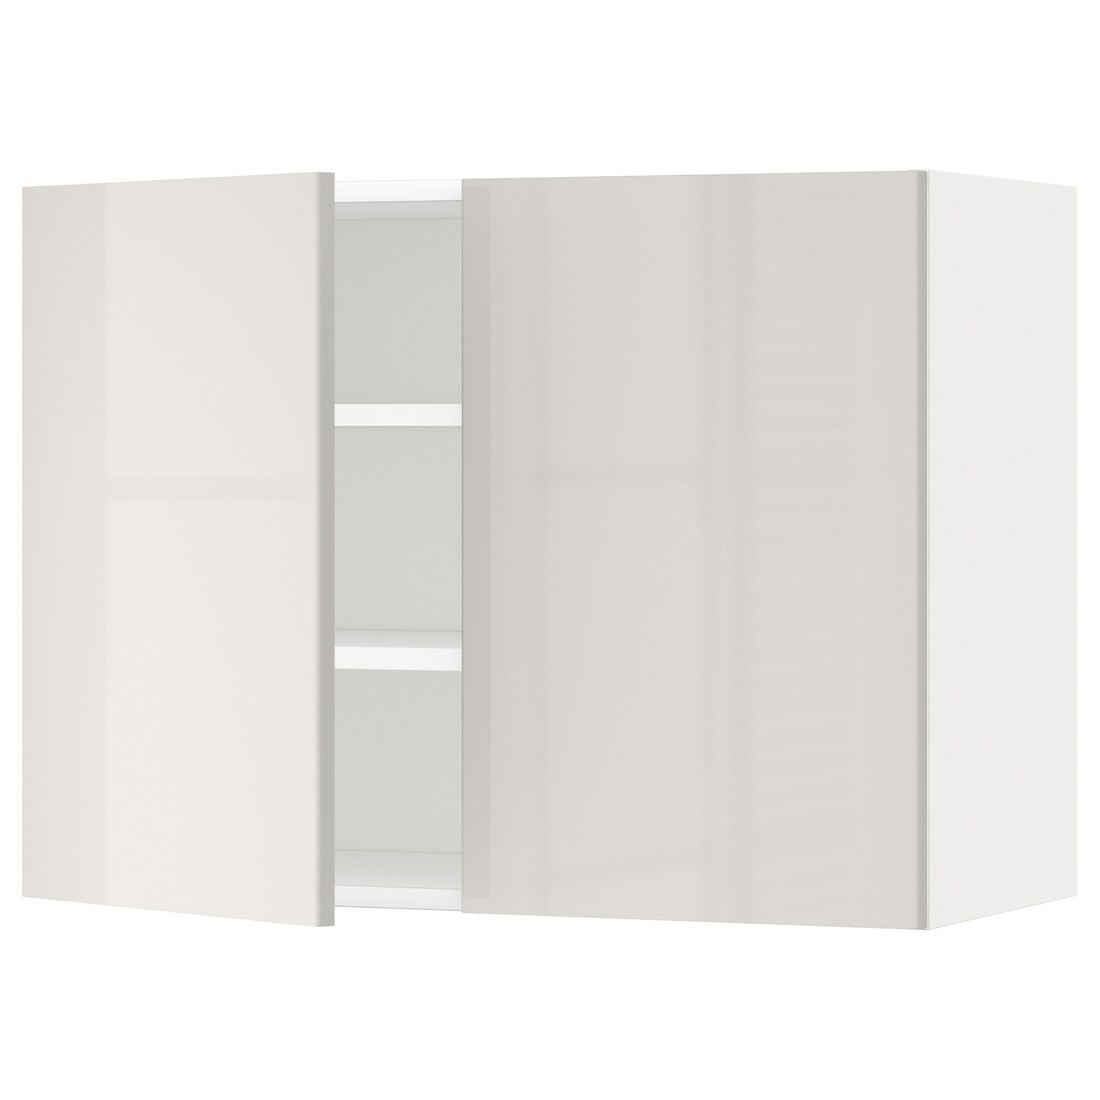 IKEA METOD МЕТОД Навісна шафа з полицями / 2 дверцят, білий / Ringhult світло-сірий, 80x60 см 99466844 994.668.44